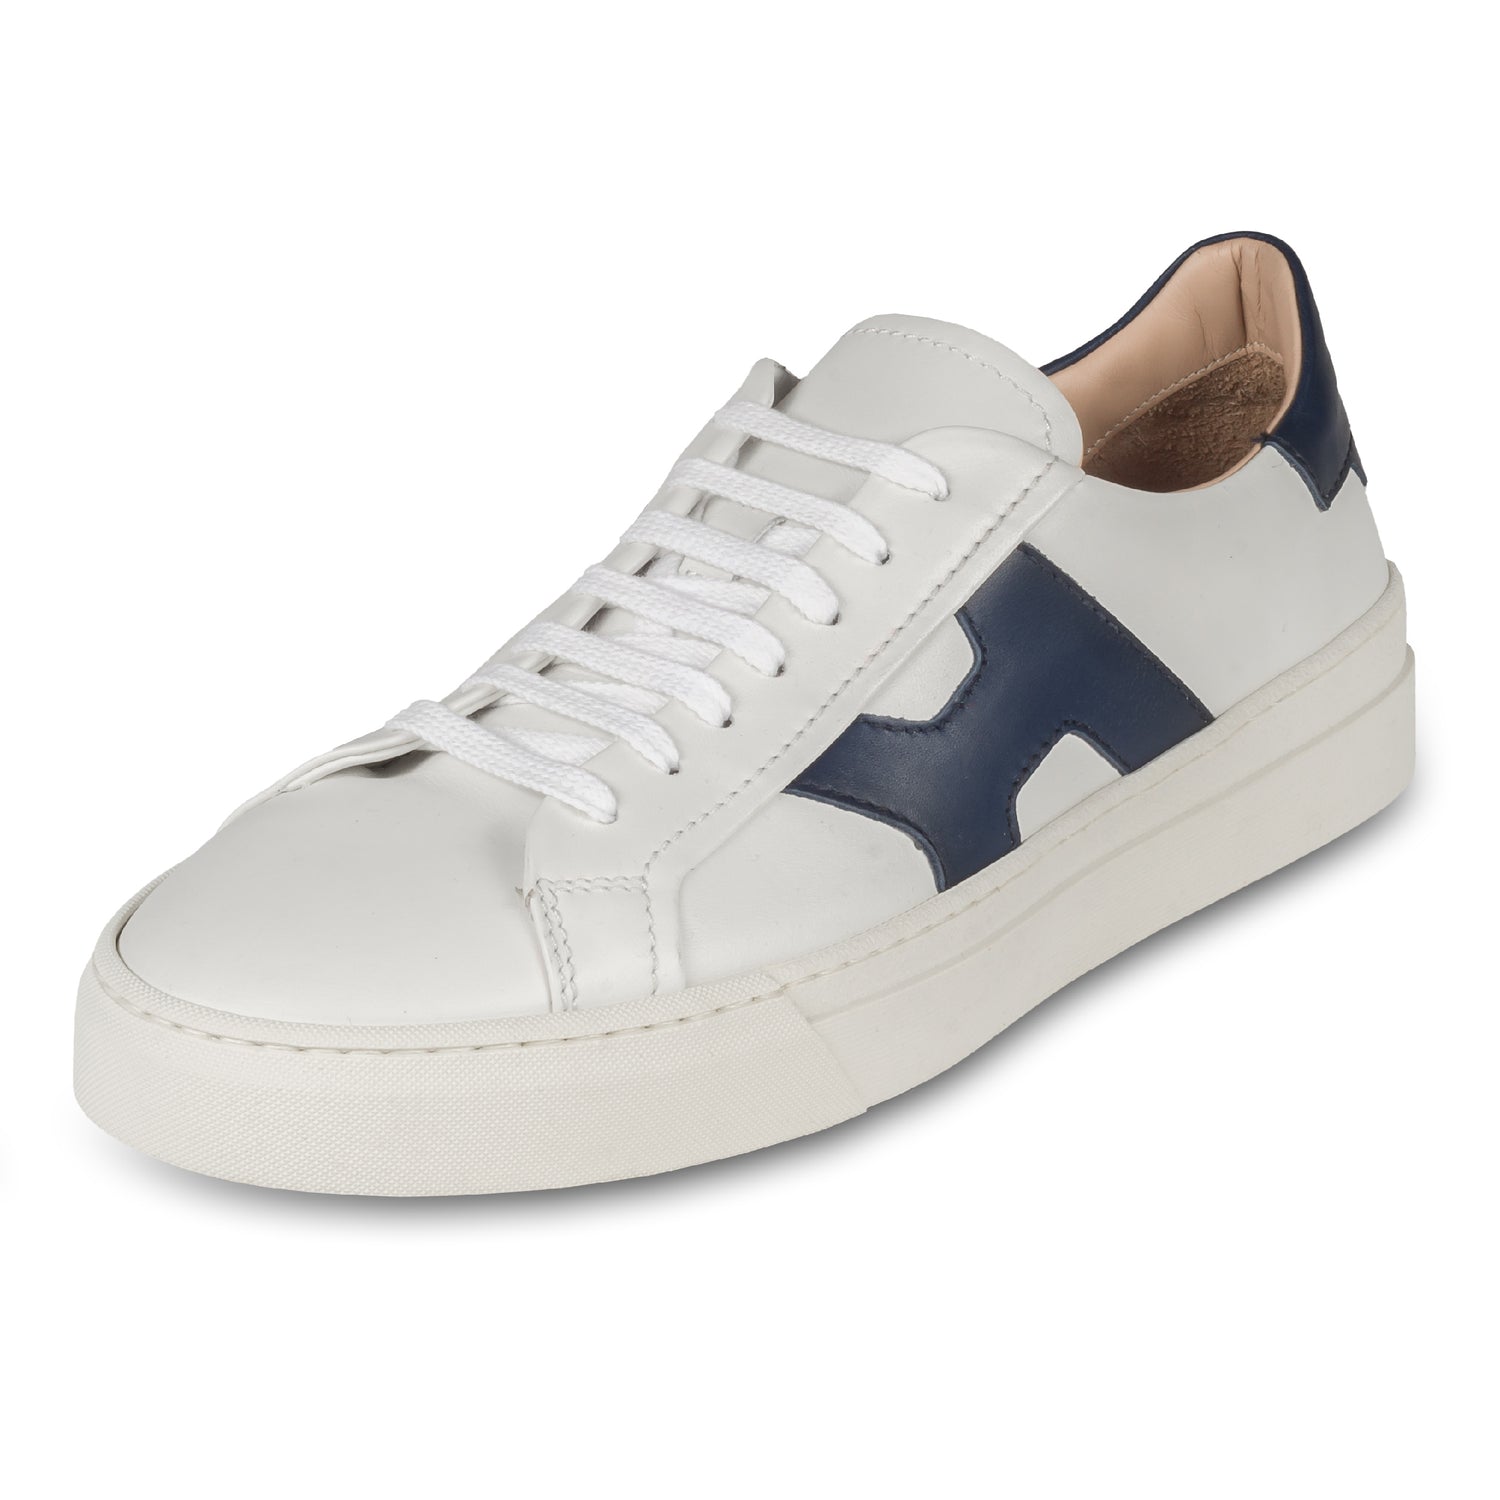 Rossano Bisconti – Italienische Herren Sneaker in weiß, mit blauen Applikationen im Santoni Style. Aus Kalbsleder mit weißer Sohle. Handgefertigt. Schräge Ansicht linker Schuh.